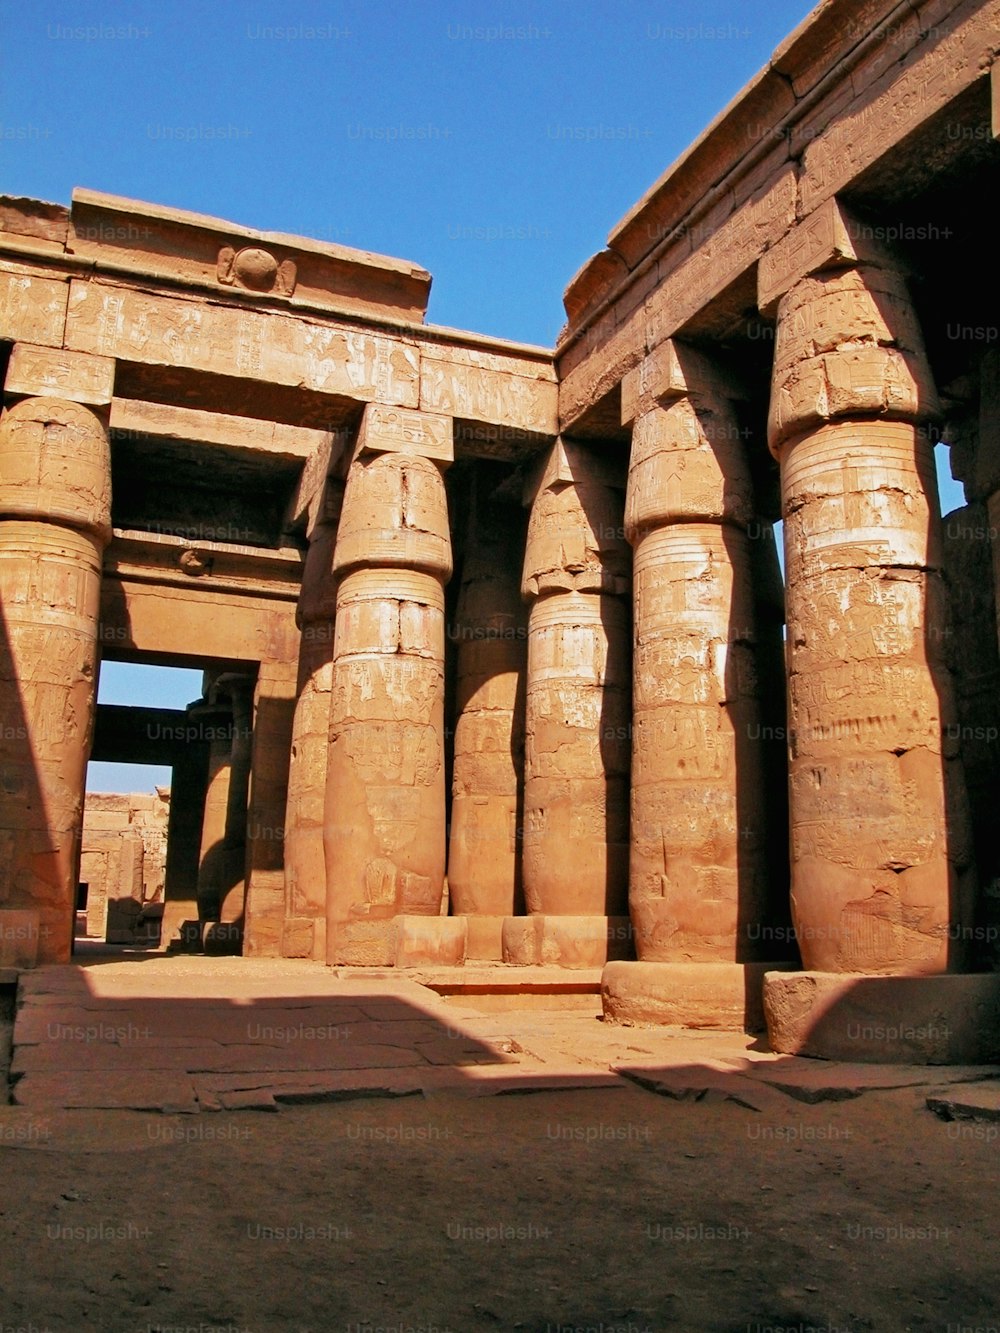 une image d’un bâtiment ancien avec des colonnes